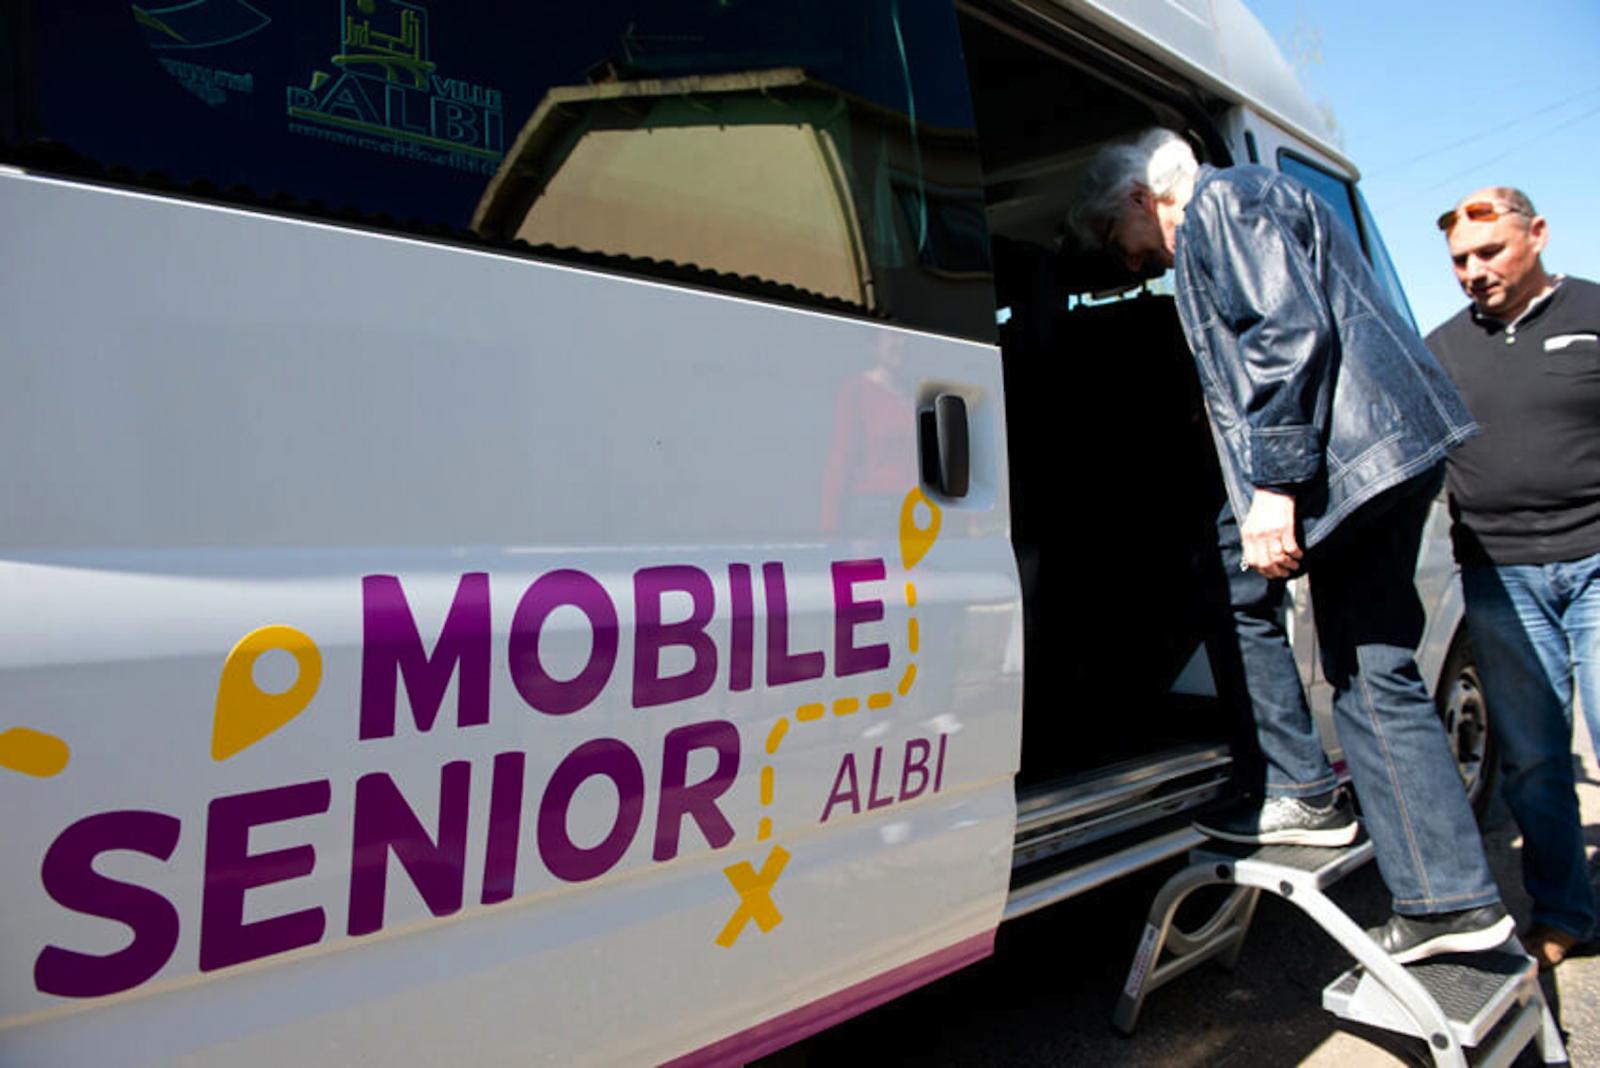 Mobile senior